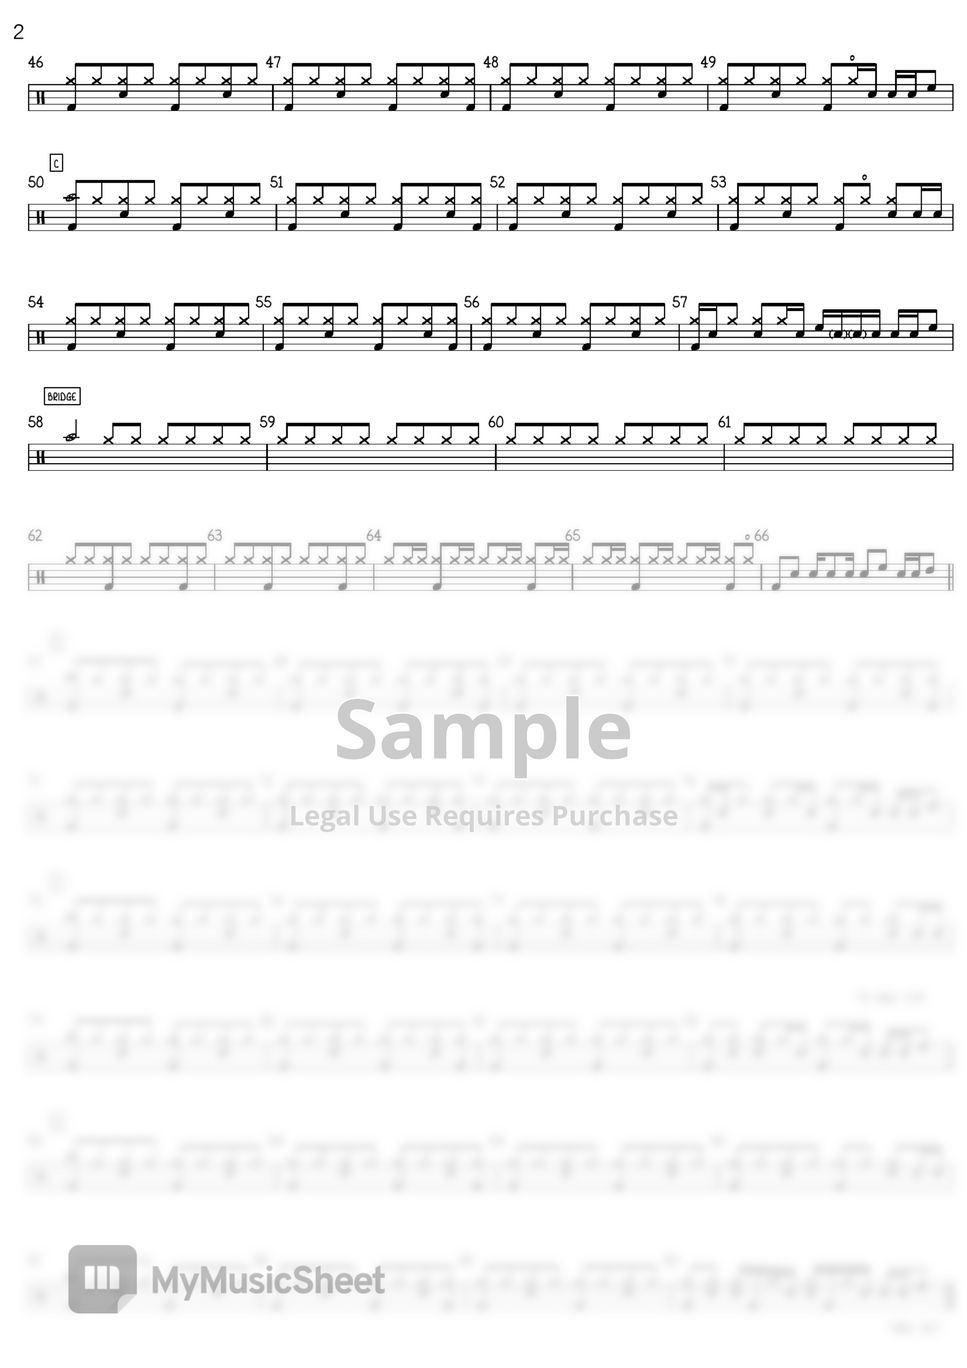 싸이 - 어땟을까 (어땠을까 드럼악보 쉽게 편곡한 버전입니다) by anidrum